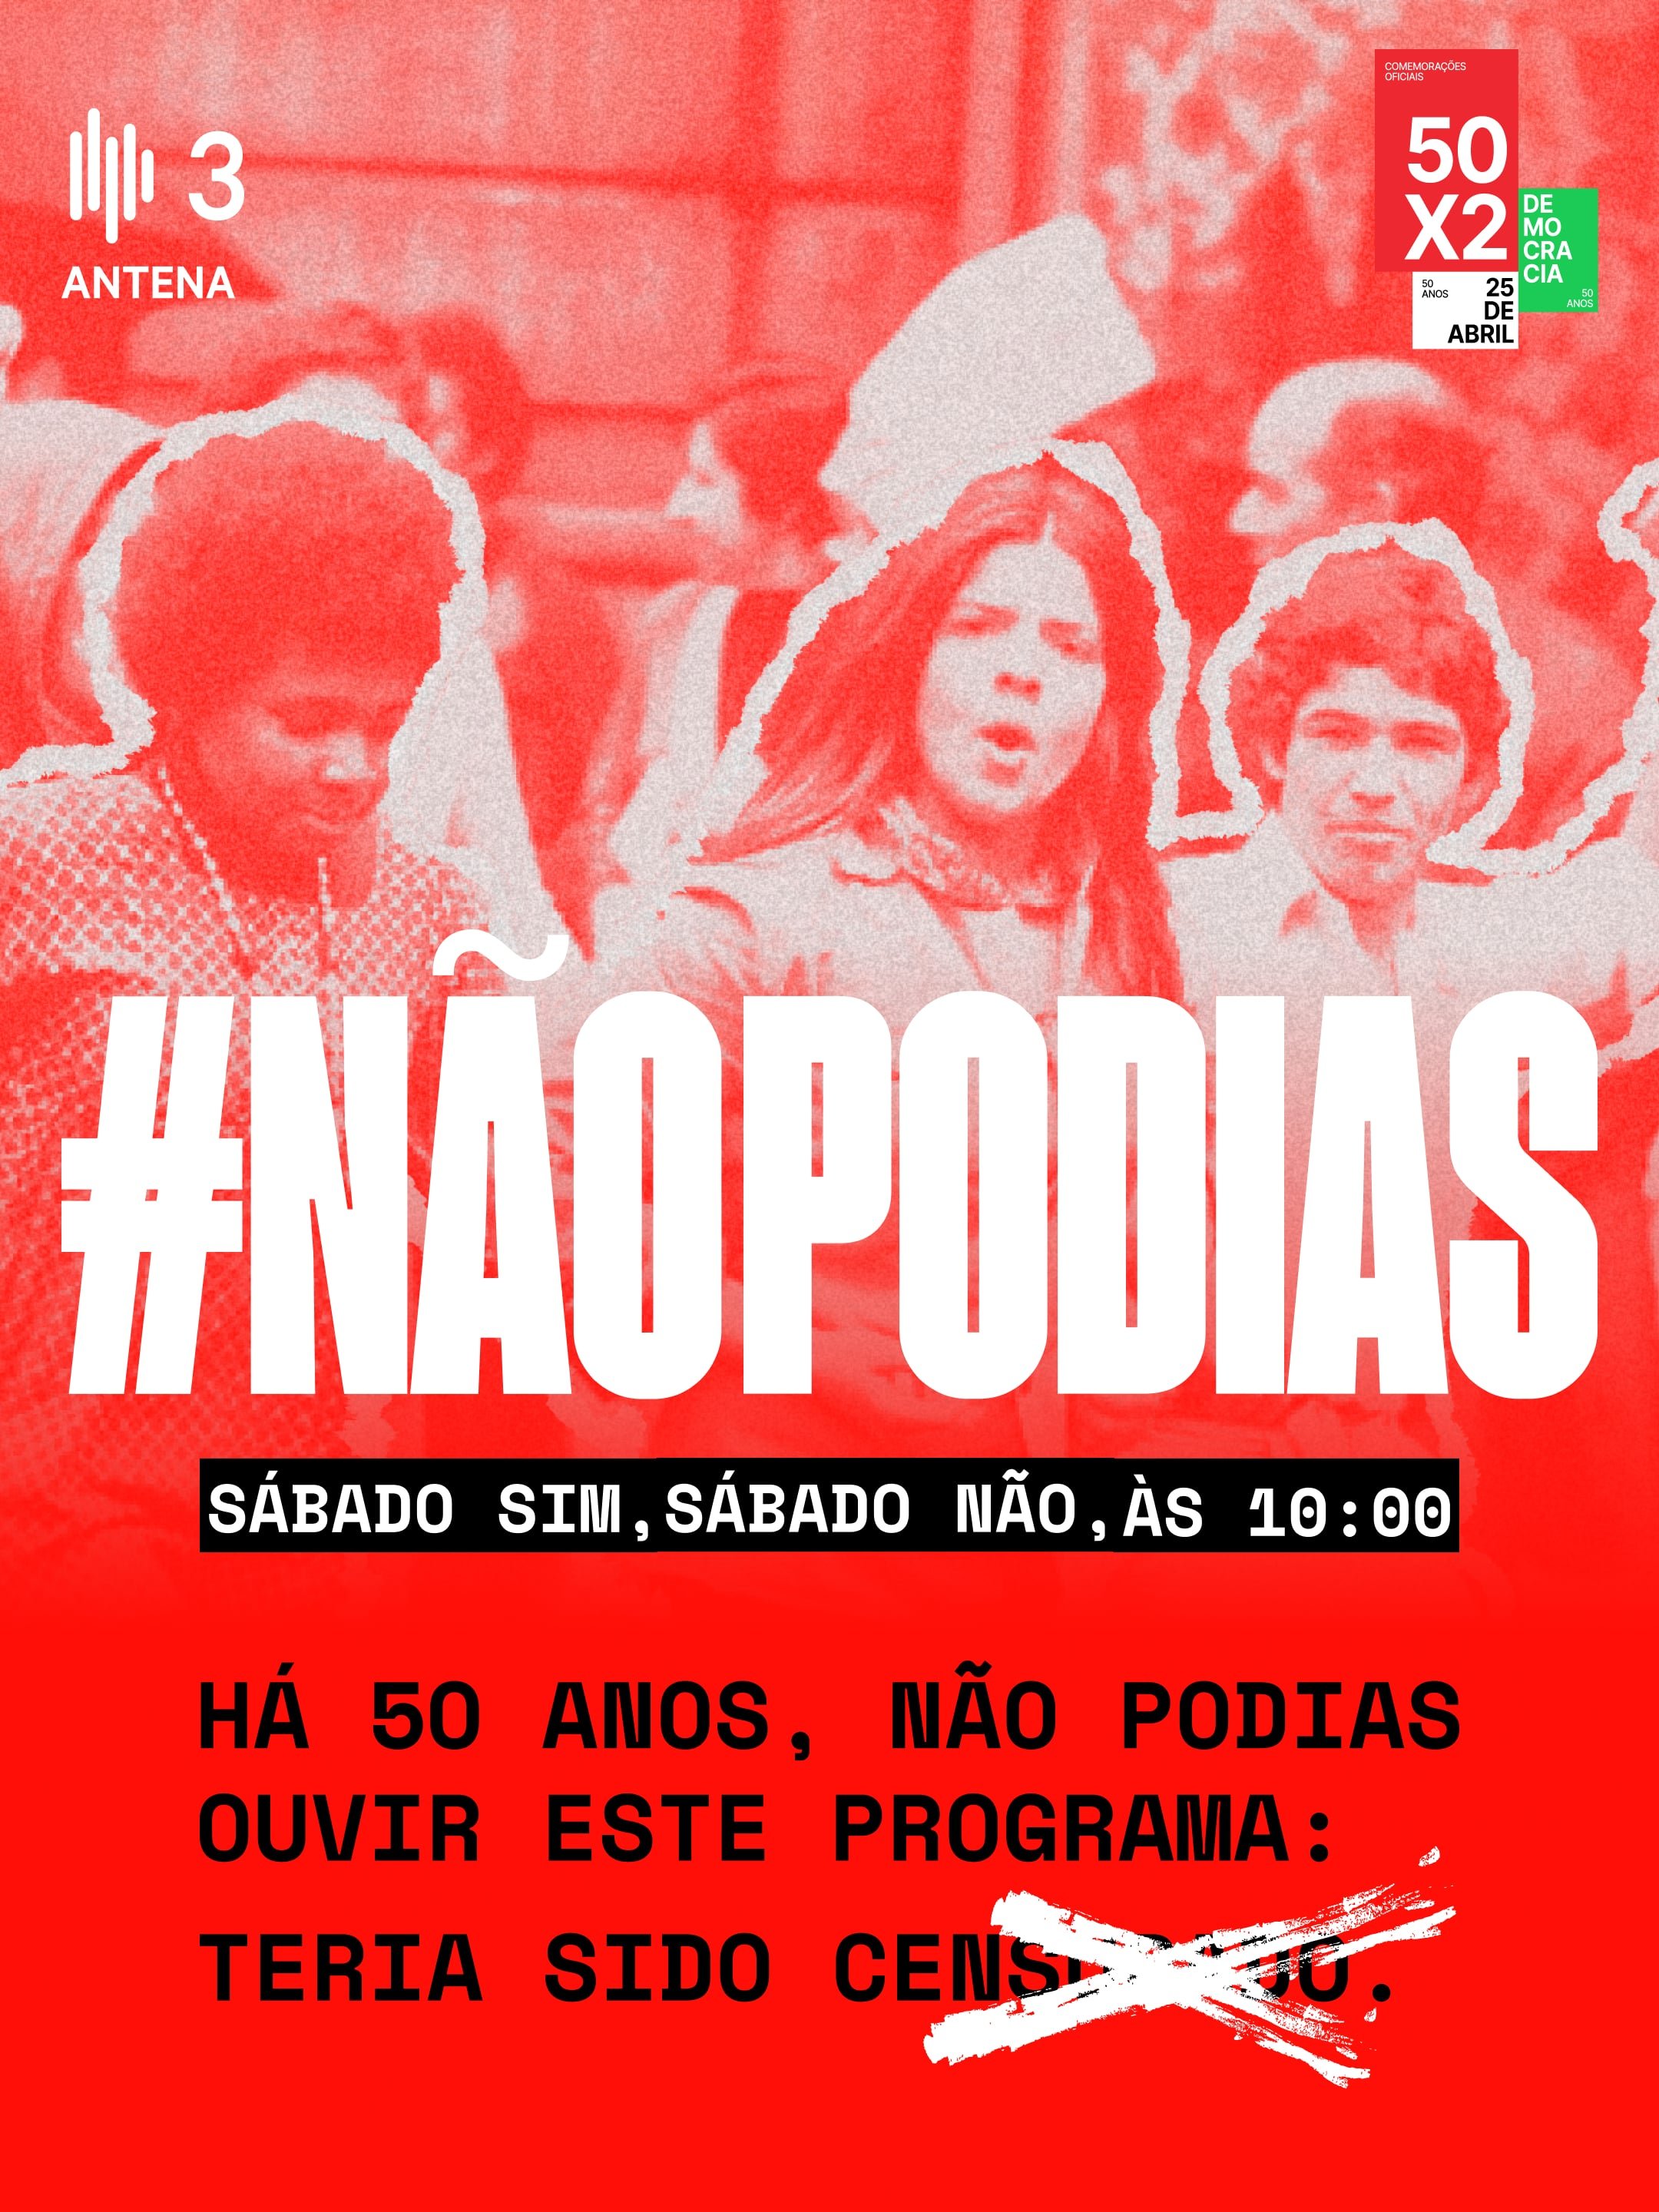 Programa #NãoPodias na Antena 3 - Comissão Comemorativa 50 Anos 25 Abril